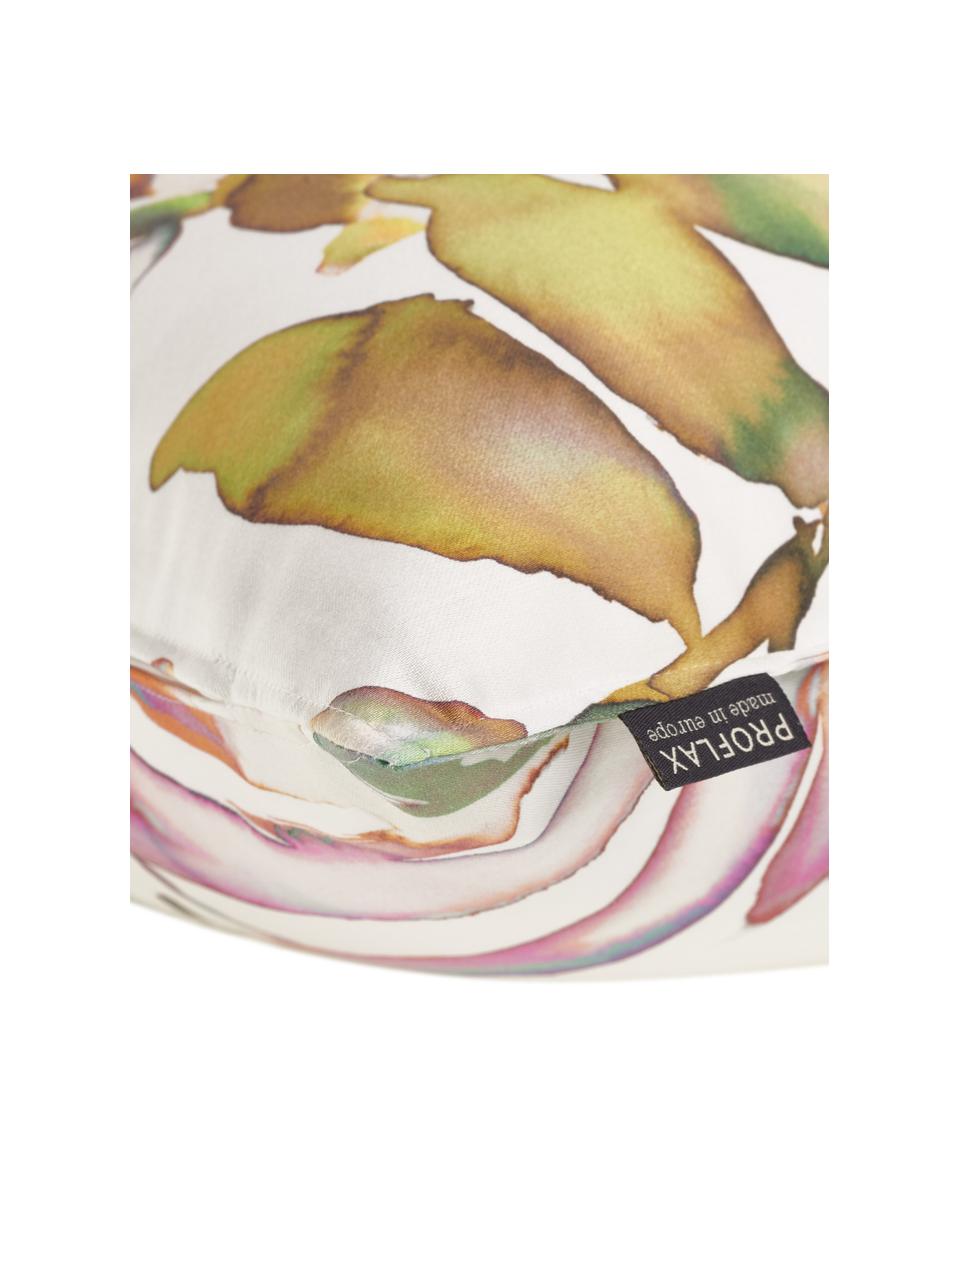 Kussenhoes Juanita met kleurrijke, tropische print, 100% katoen, Wit, multicolour, 40 x 40 cm